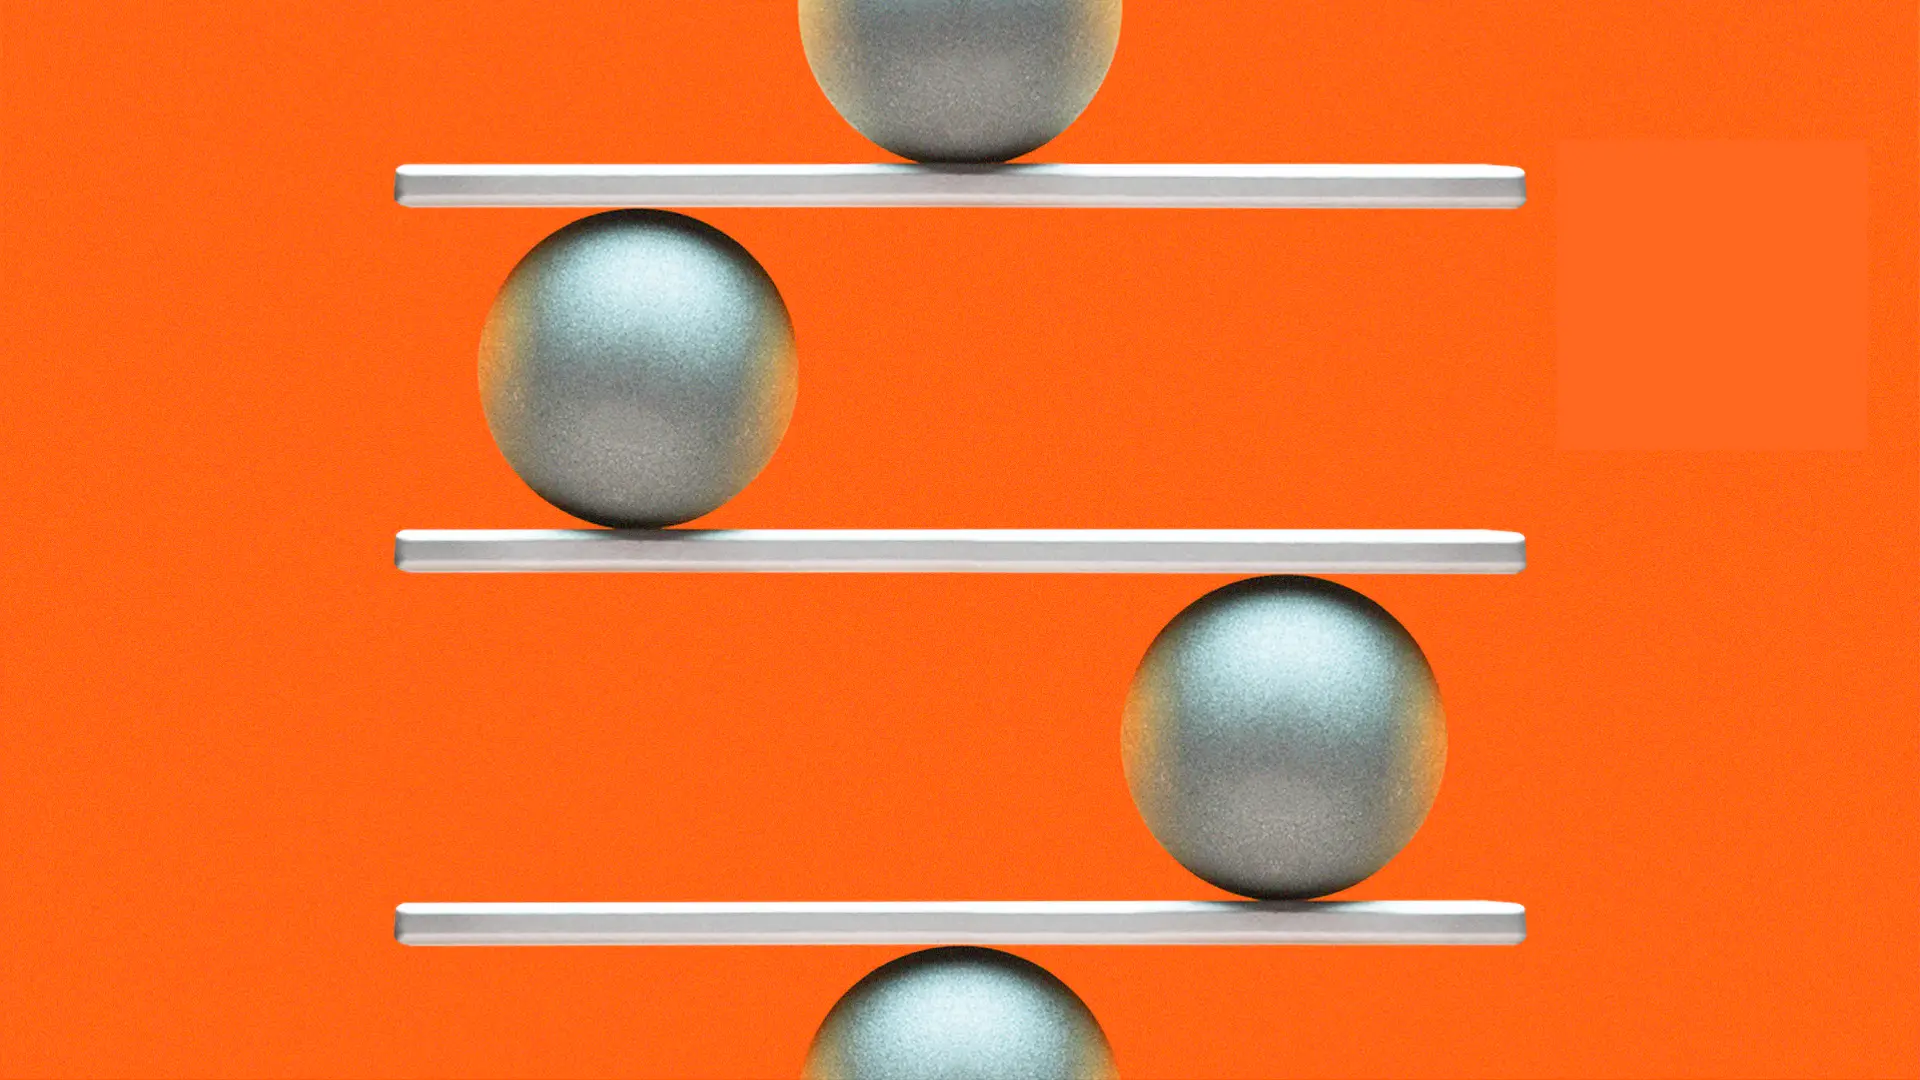 Metal balls balancing on rungs of a ladder